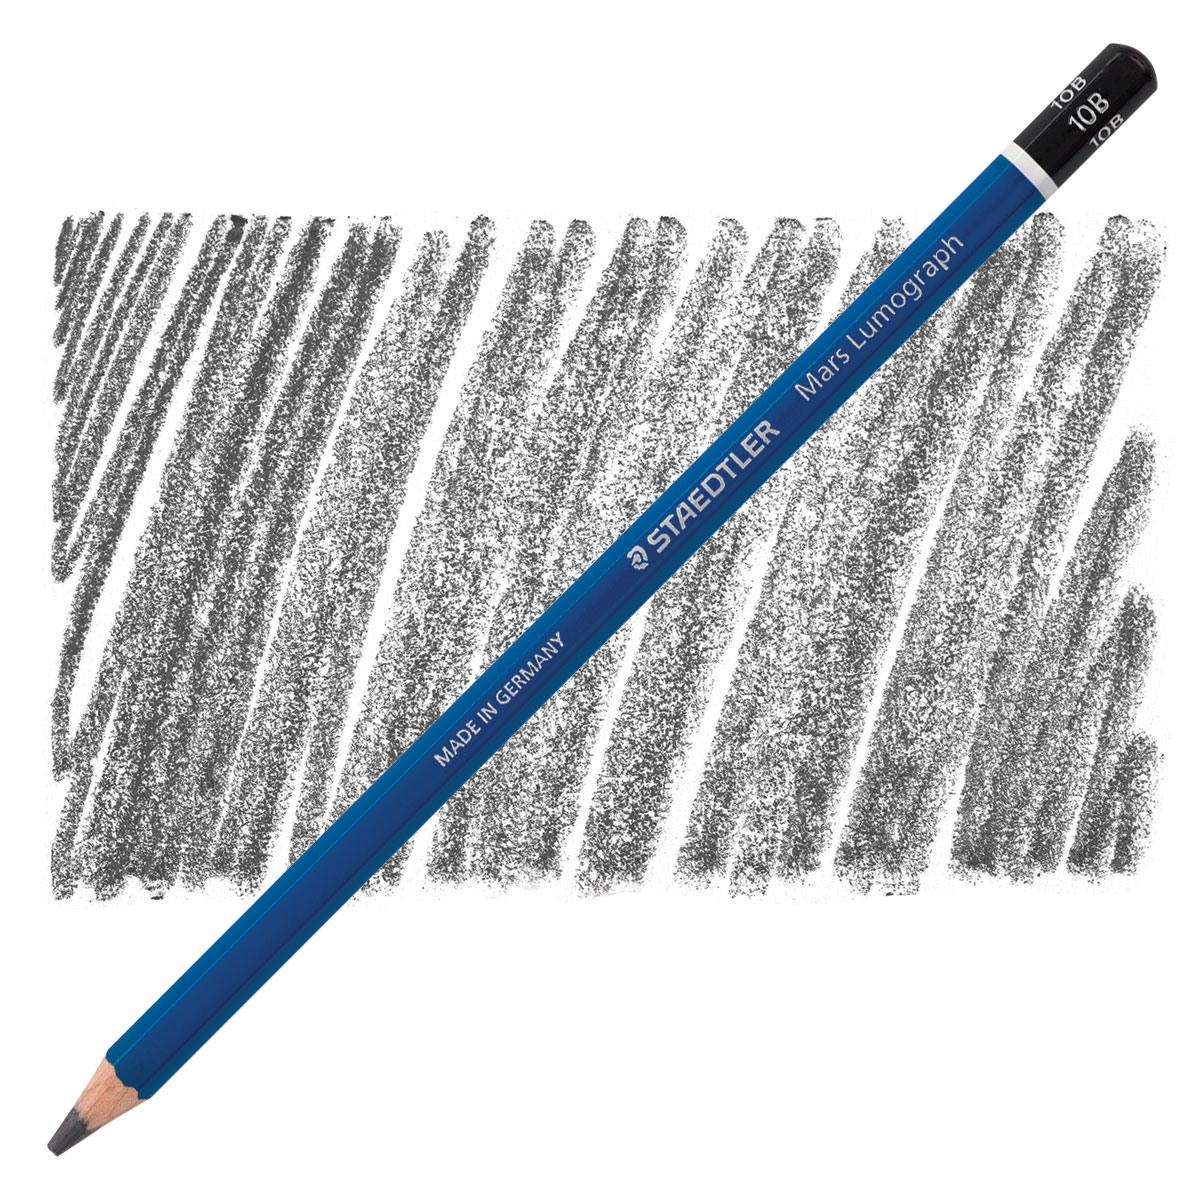 Staedtler Mars Lumograph Graphite Pencil Set - Zerbee